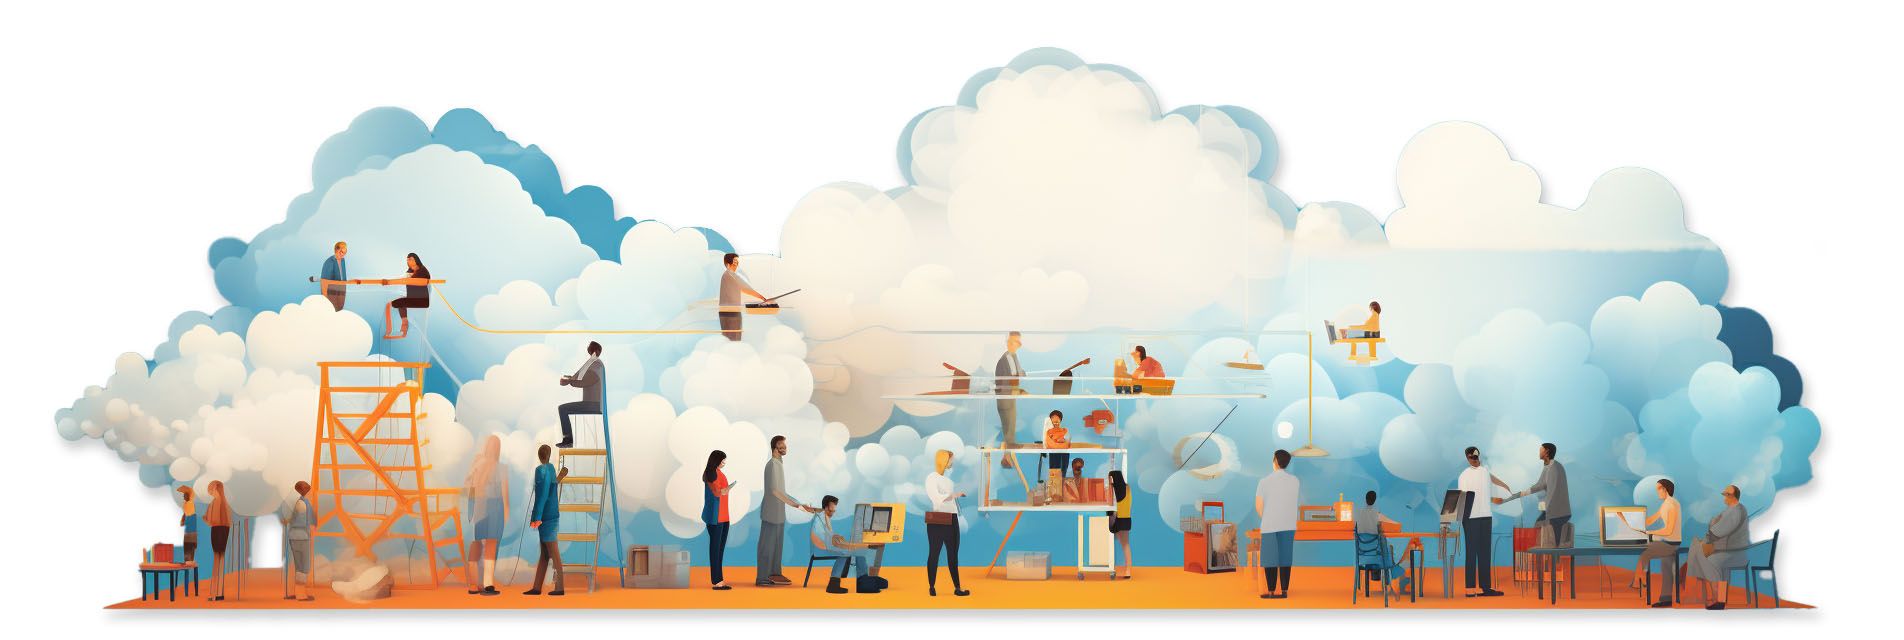 Illustration av folk som arbetar i ett kontorslandskap omgivet av moln.